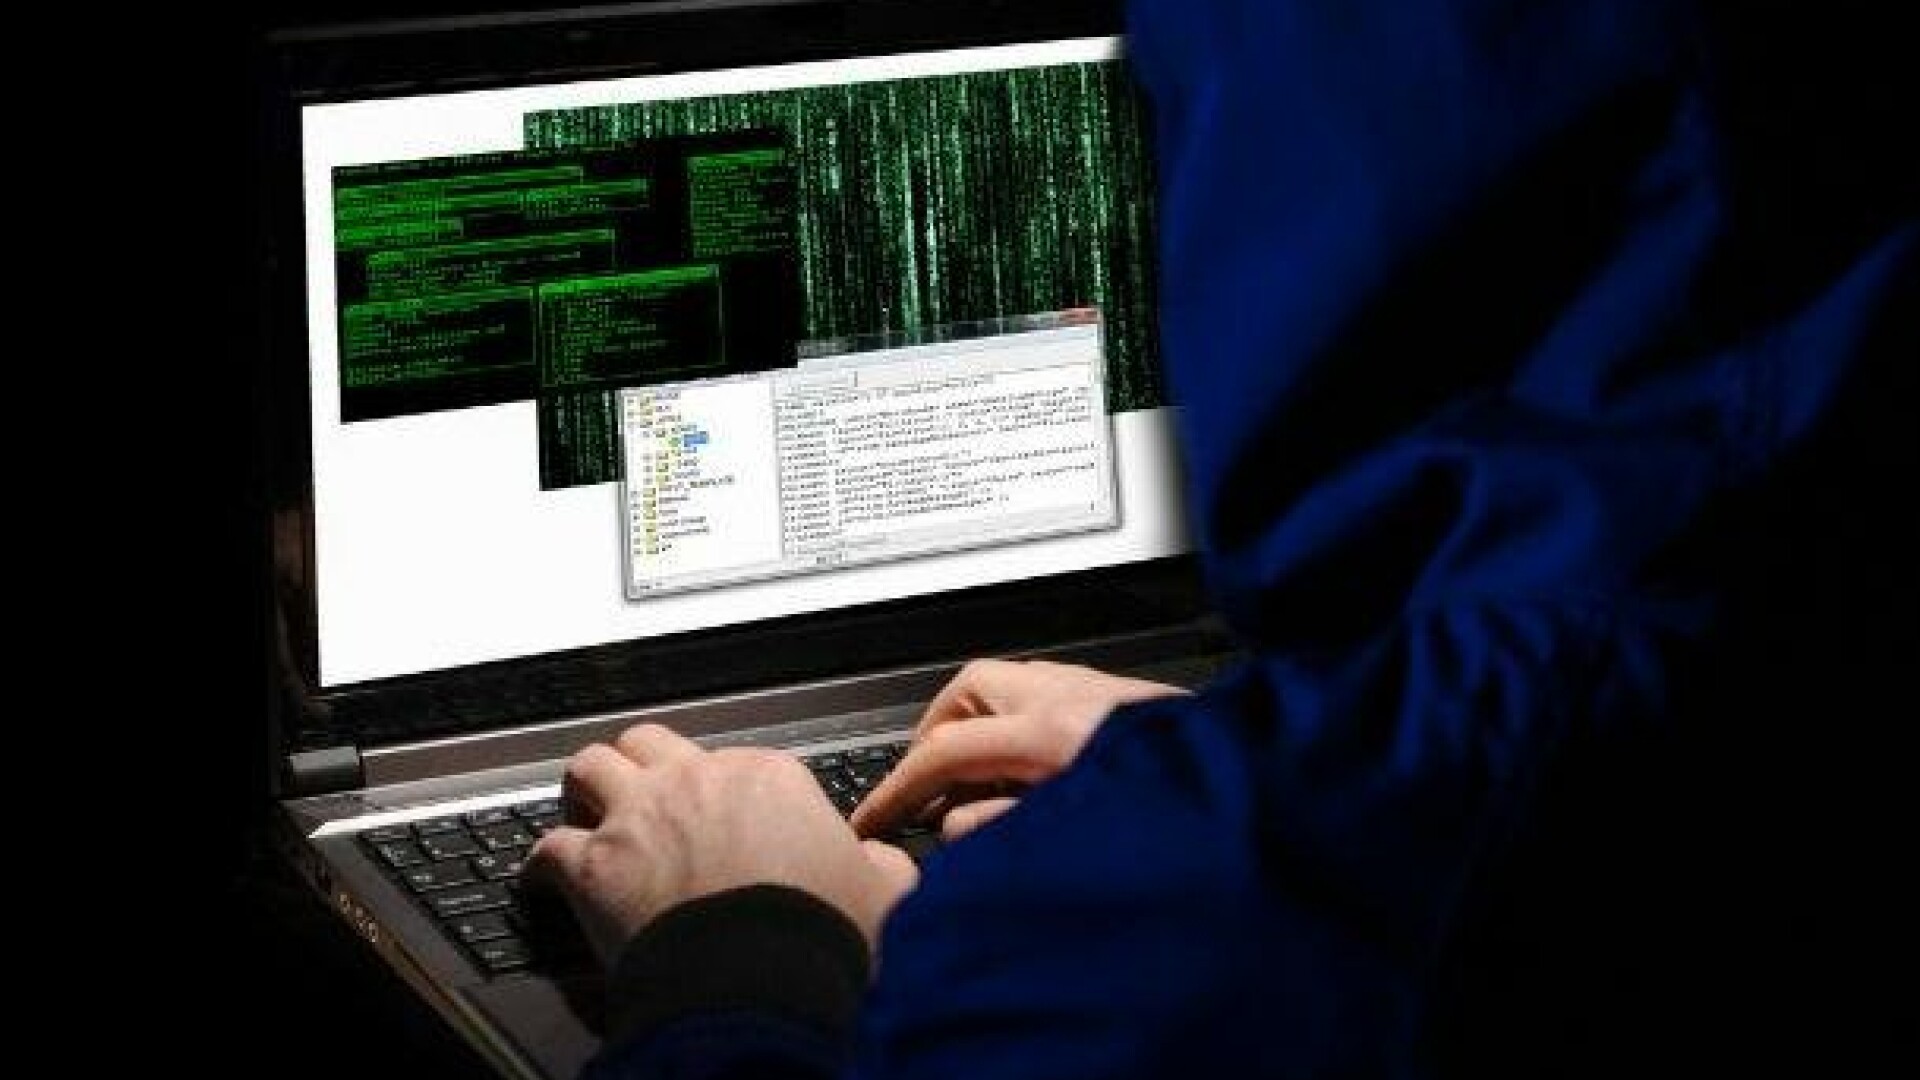 FBI ofera recompense de 4.2 milioane de dolari pentru 5 hackeri. Pe locul 2 in lista este un roman